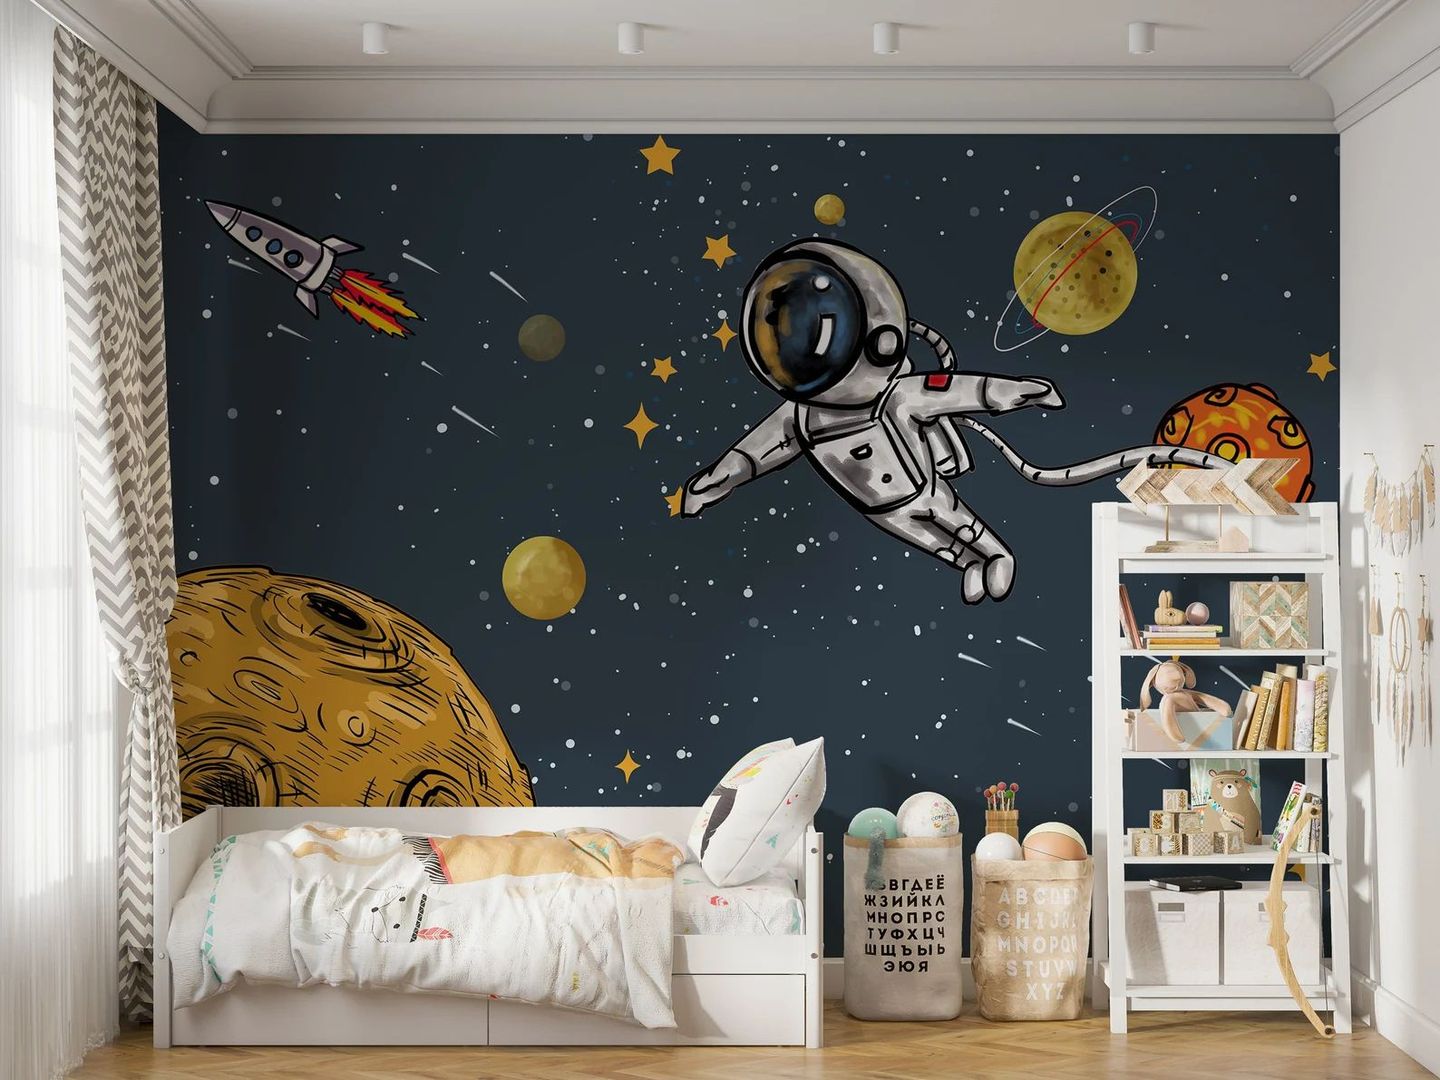 Salah satu motif wallpaper yang bisa digunakan pada dinding kamar anak laki-laki adalah motif astronot.